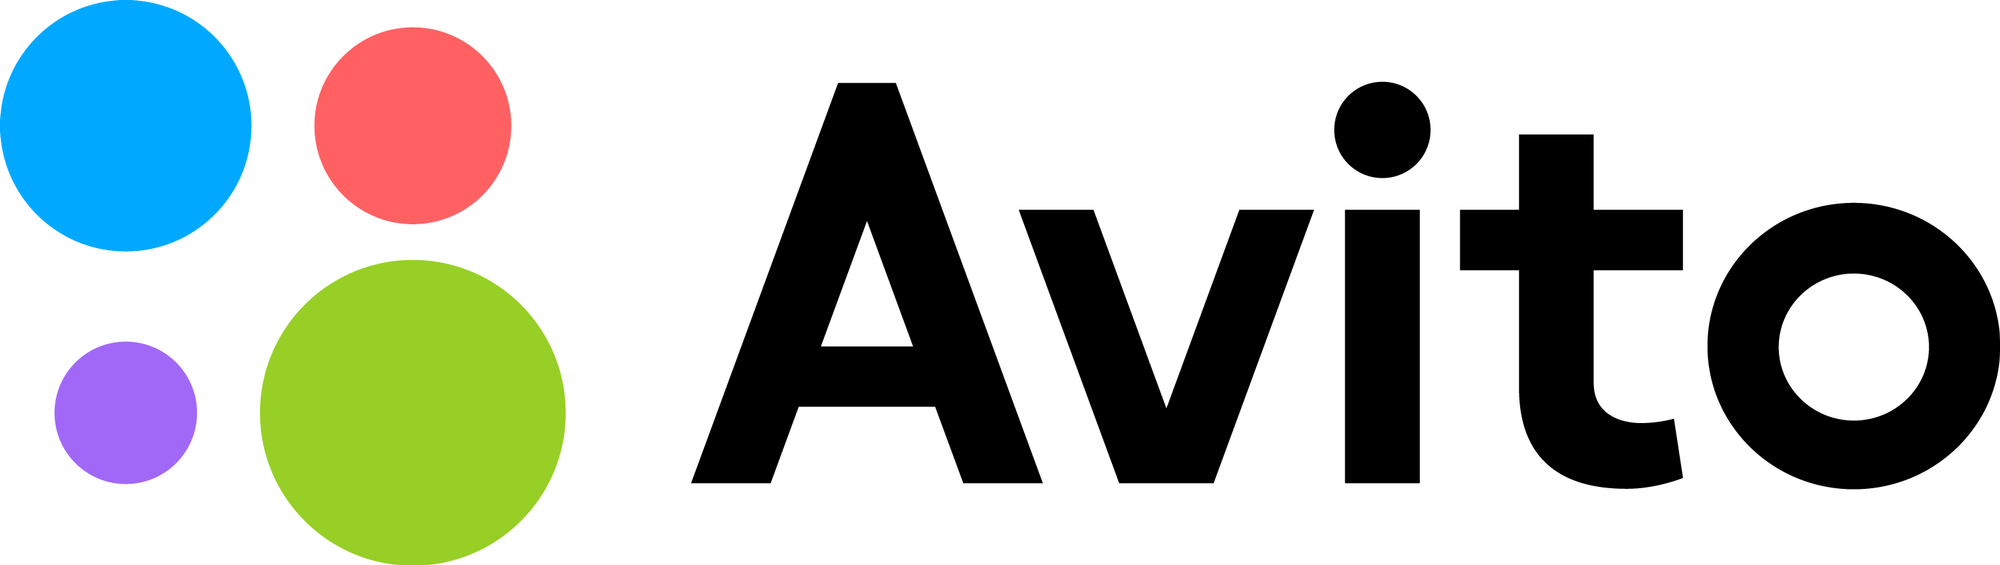 лого авито